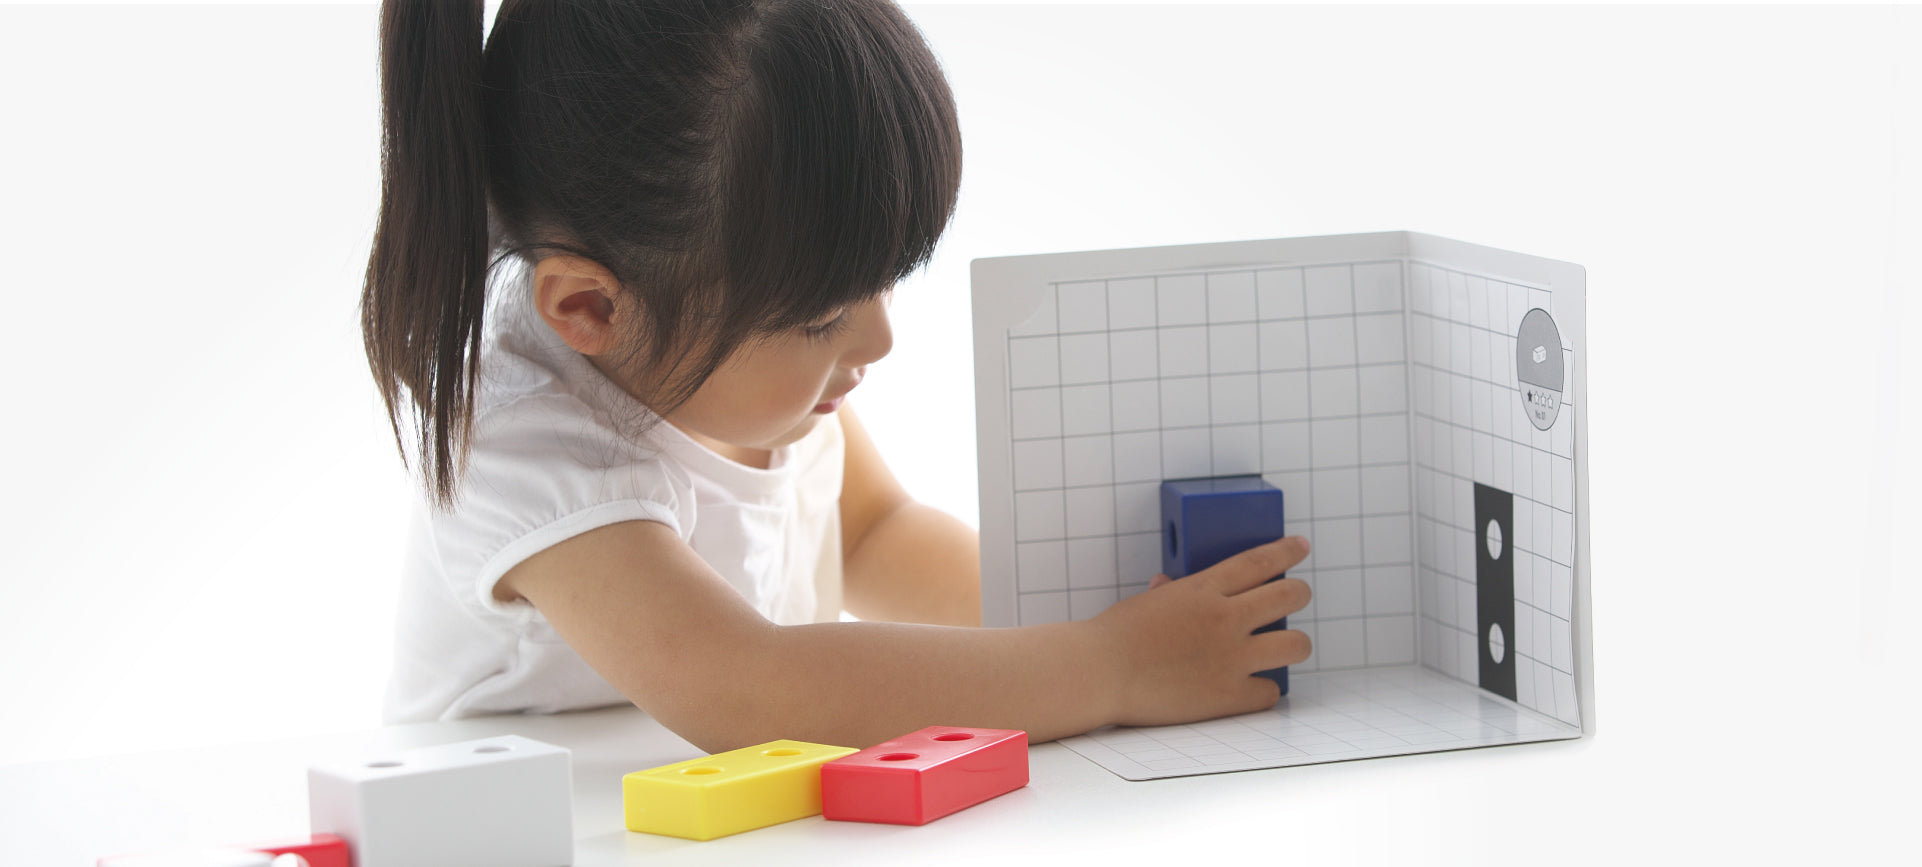 コロンブスのつみき3Dパズルセットで遊ぶ子供